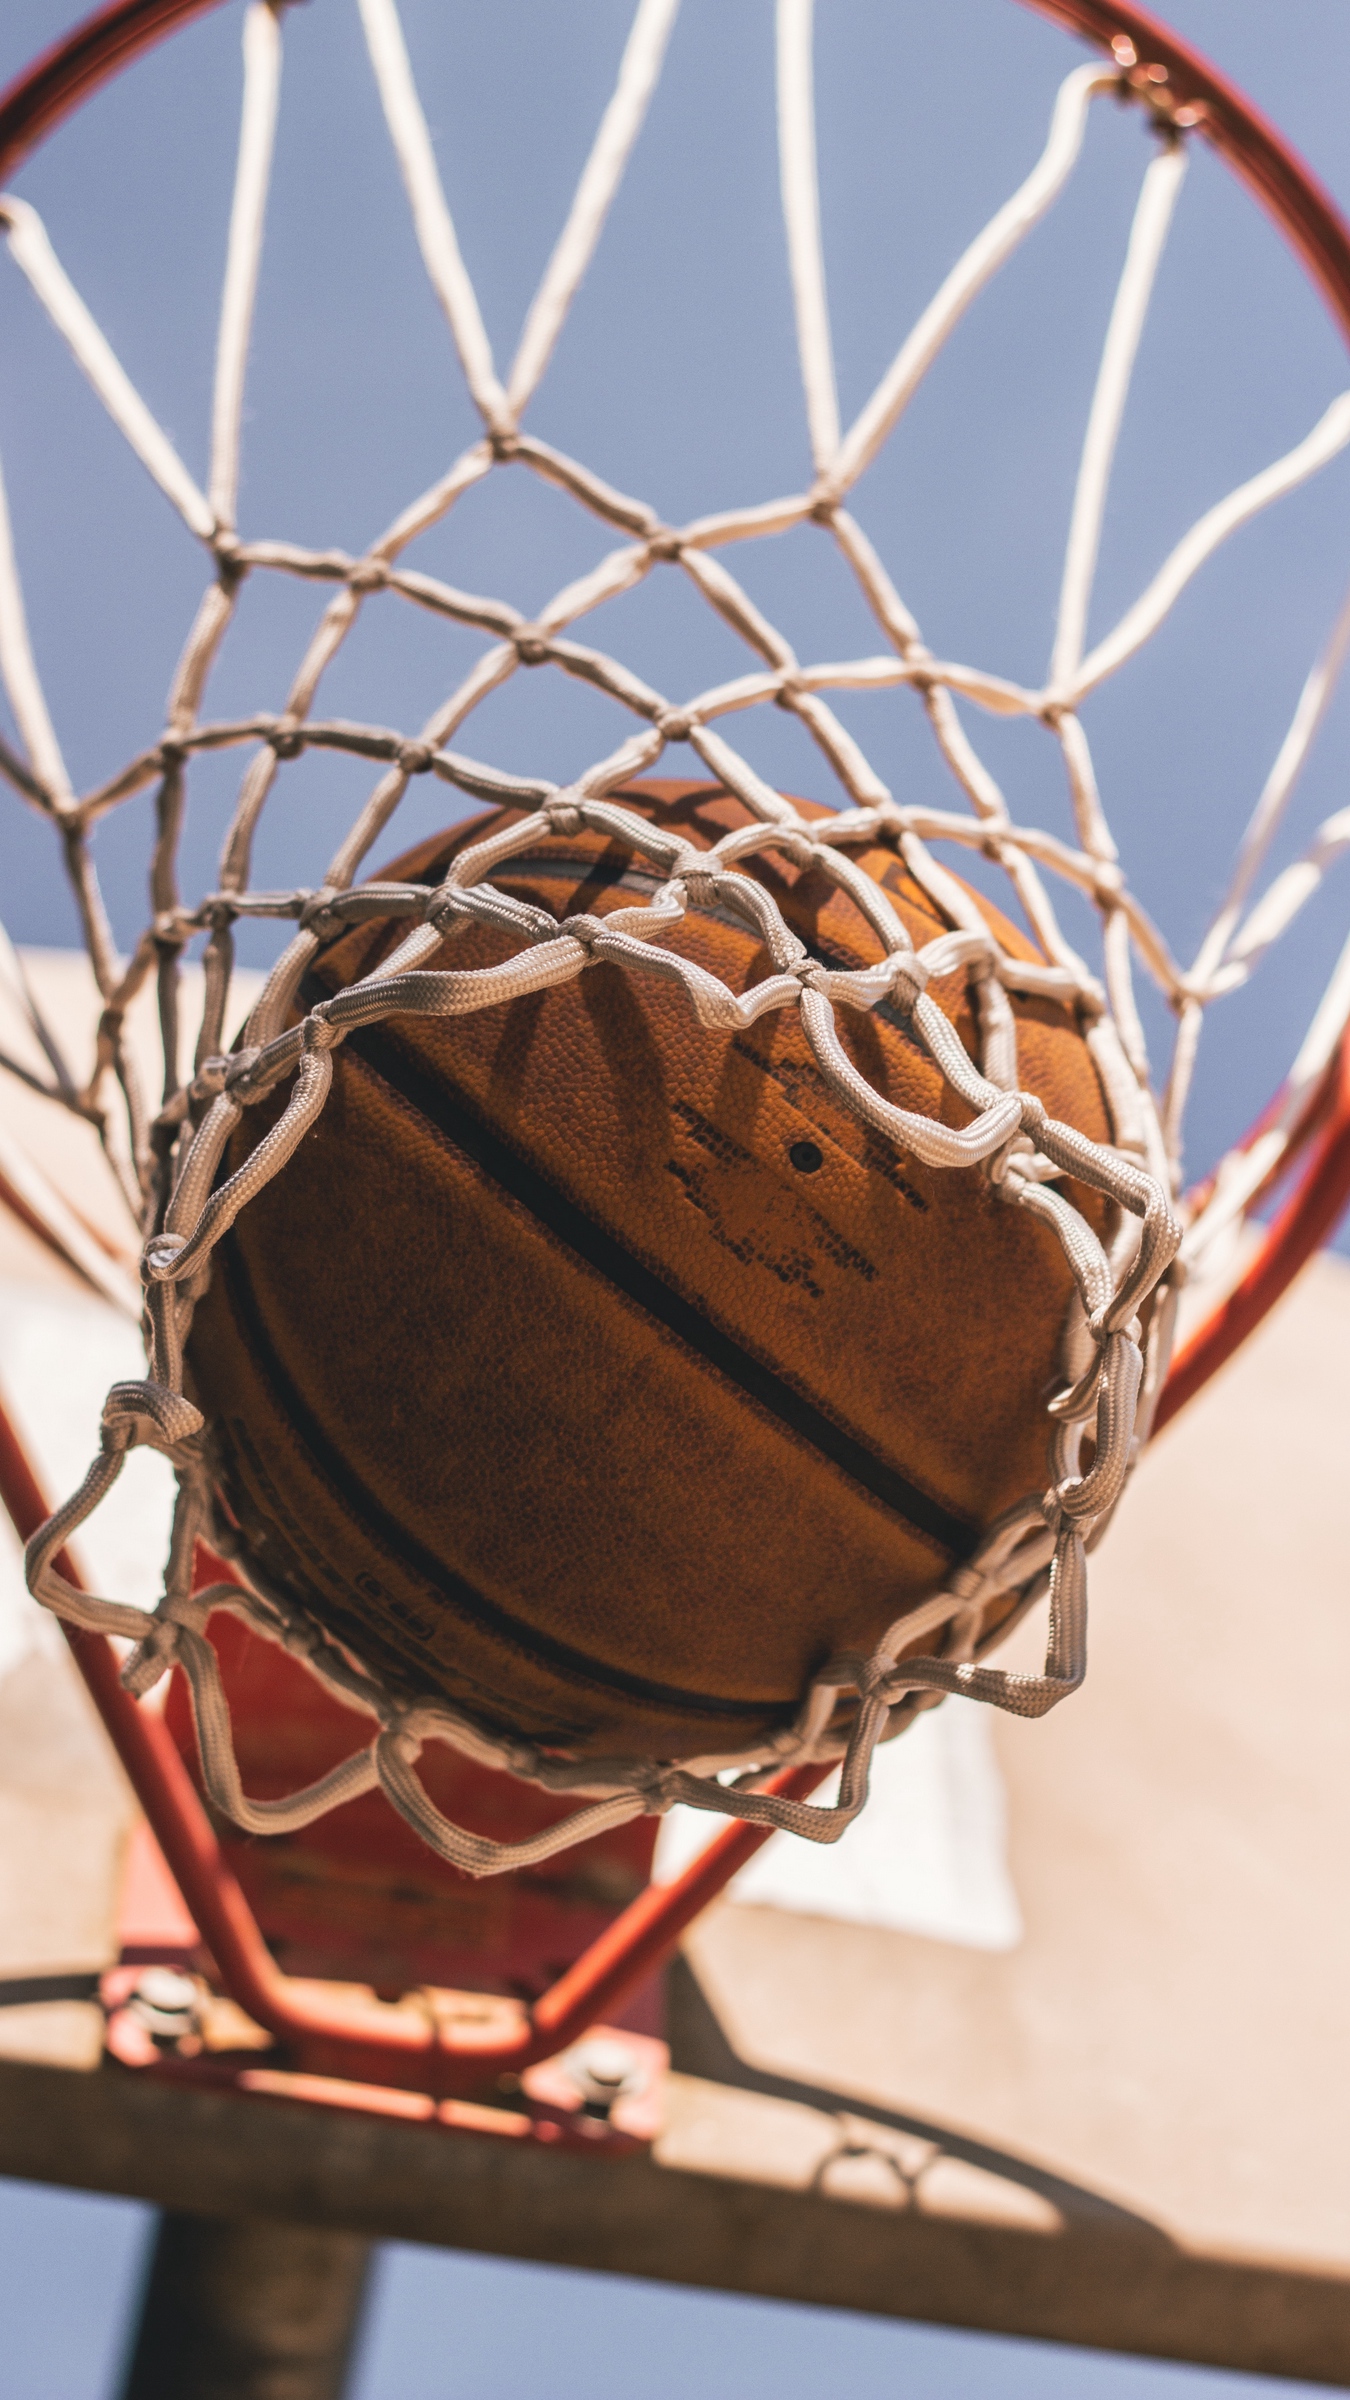 Wallpaper Basketball, Basketball Net, Ball - Basketball Wallpapers For Iphone - HD Wallpaper 